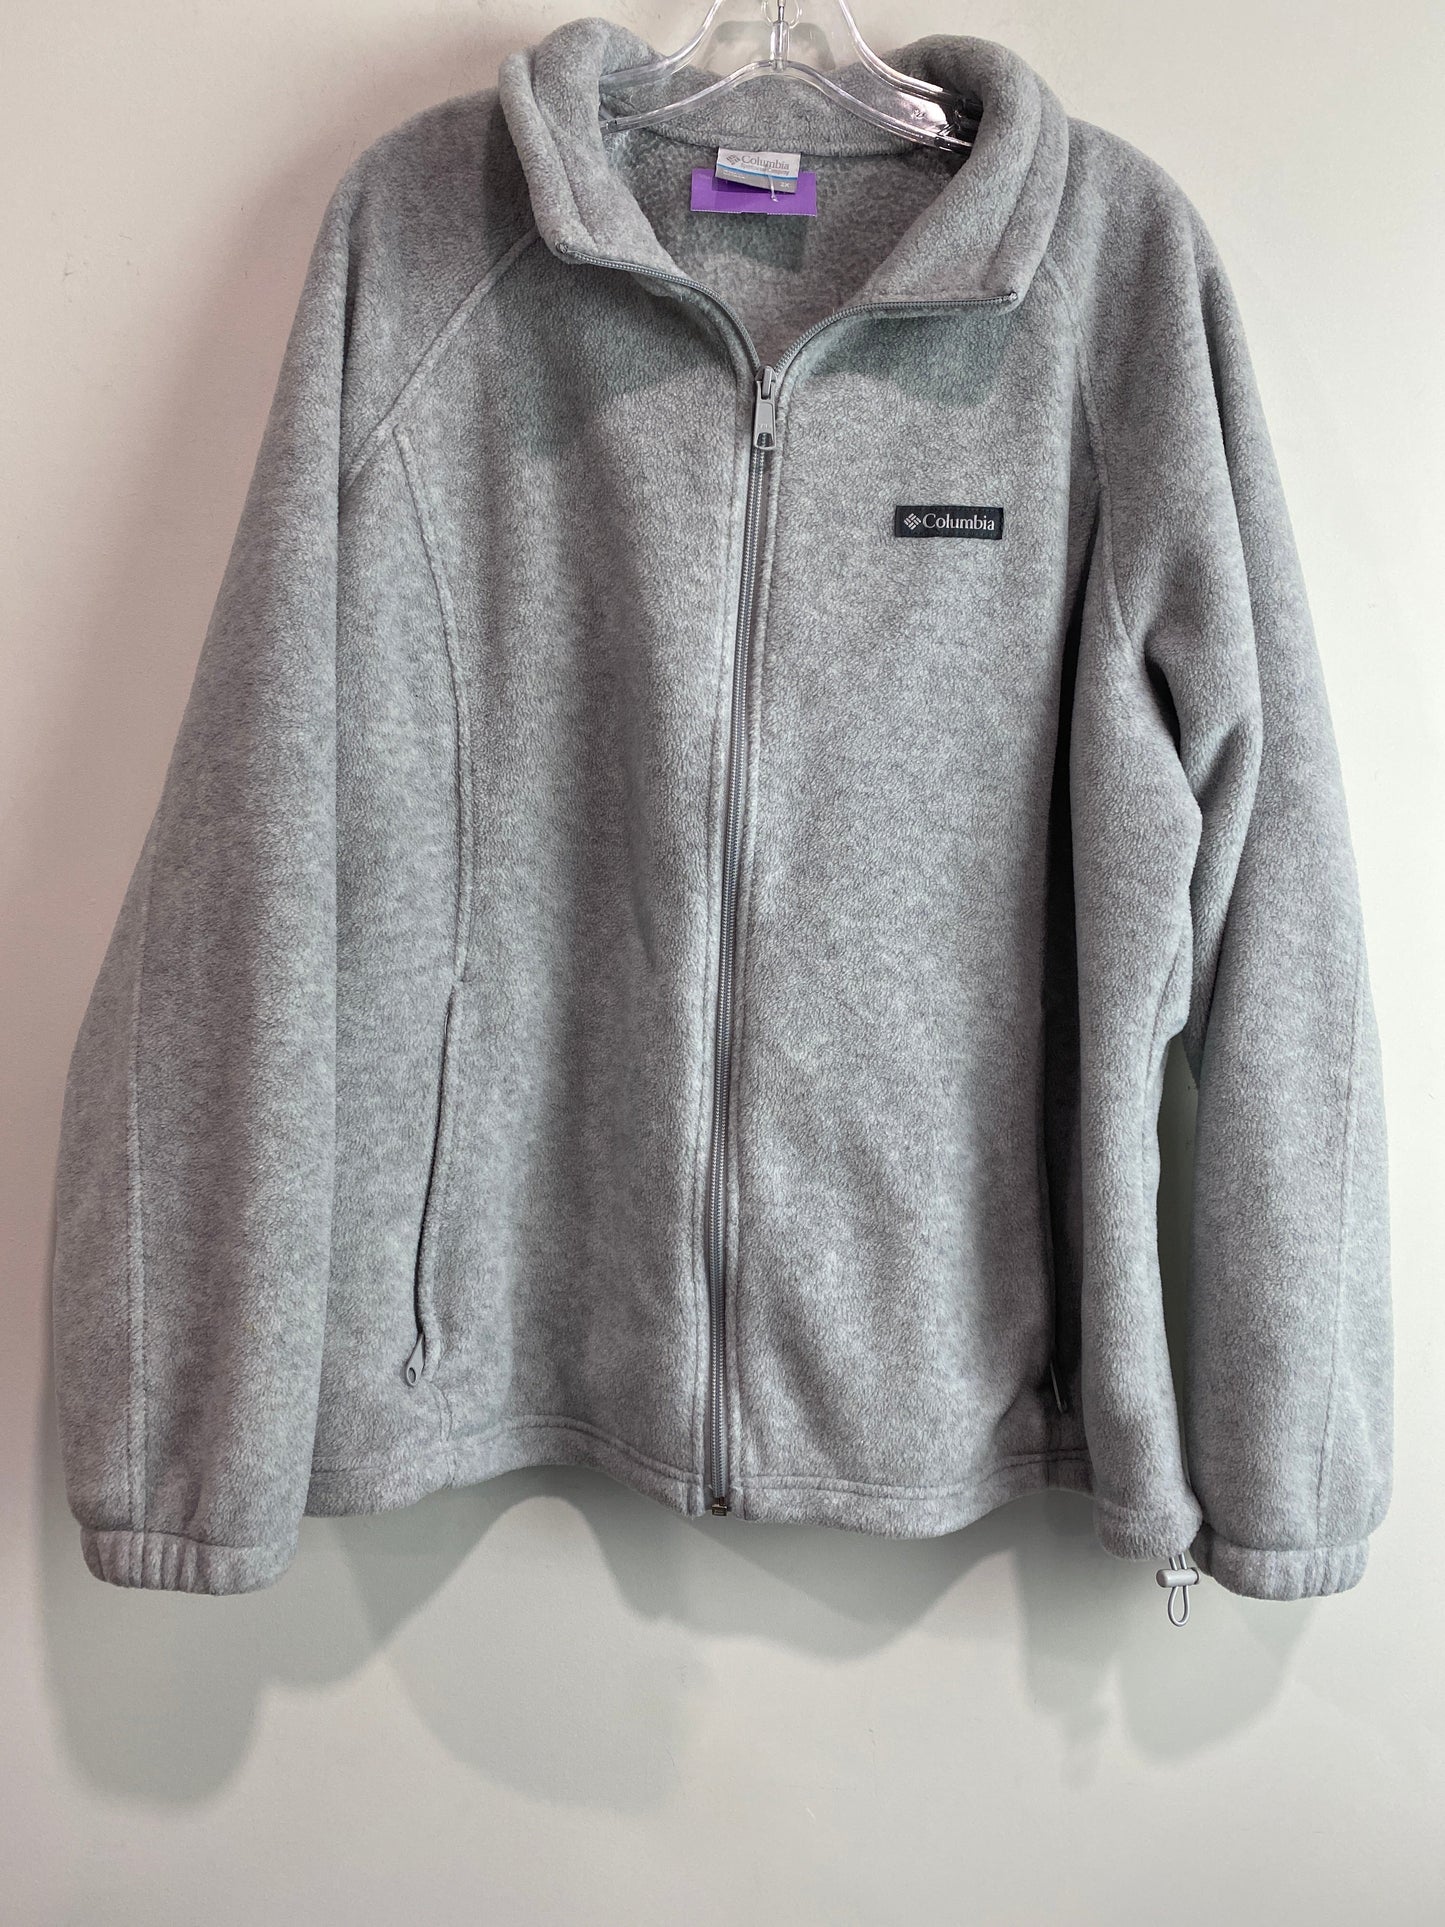 Grey Jacket Fleece Columbia, Size 2x